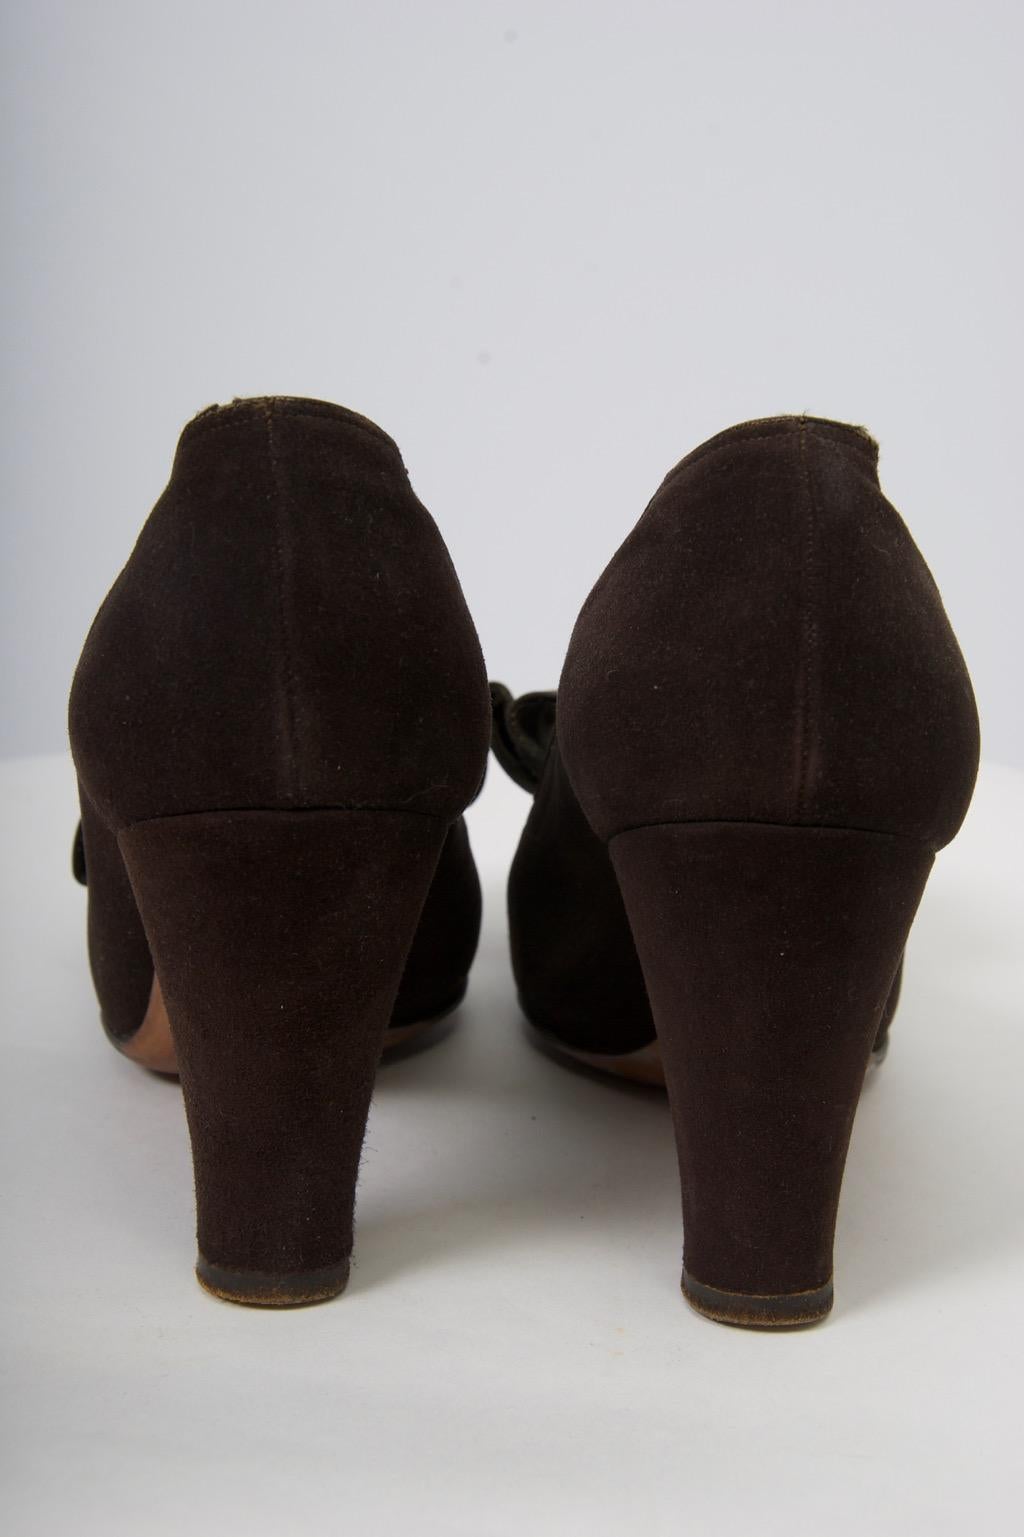 1950s peep toe shoes